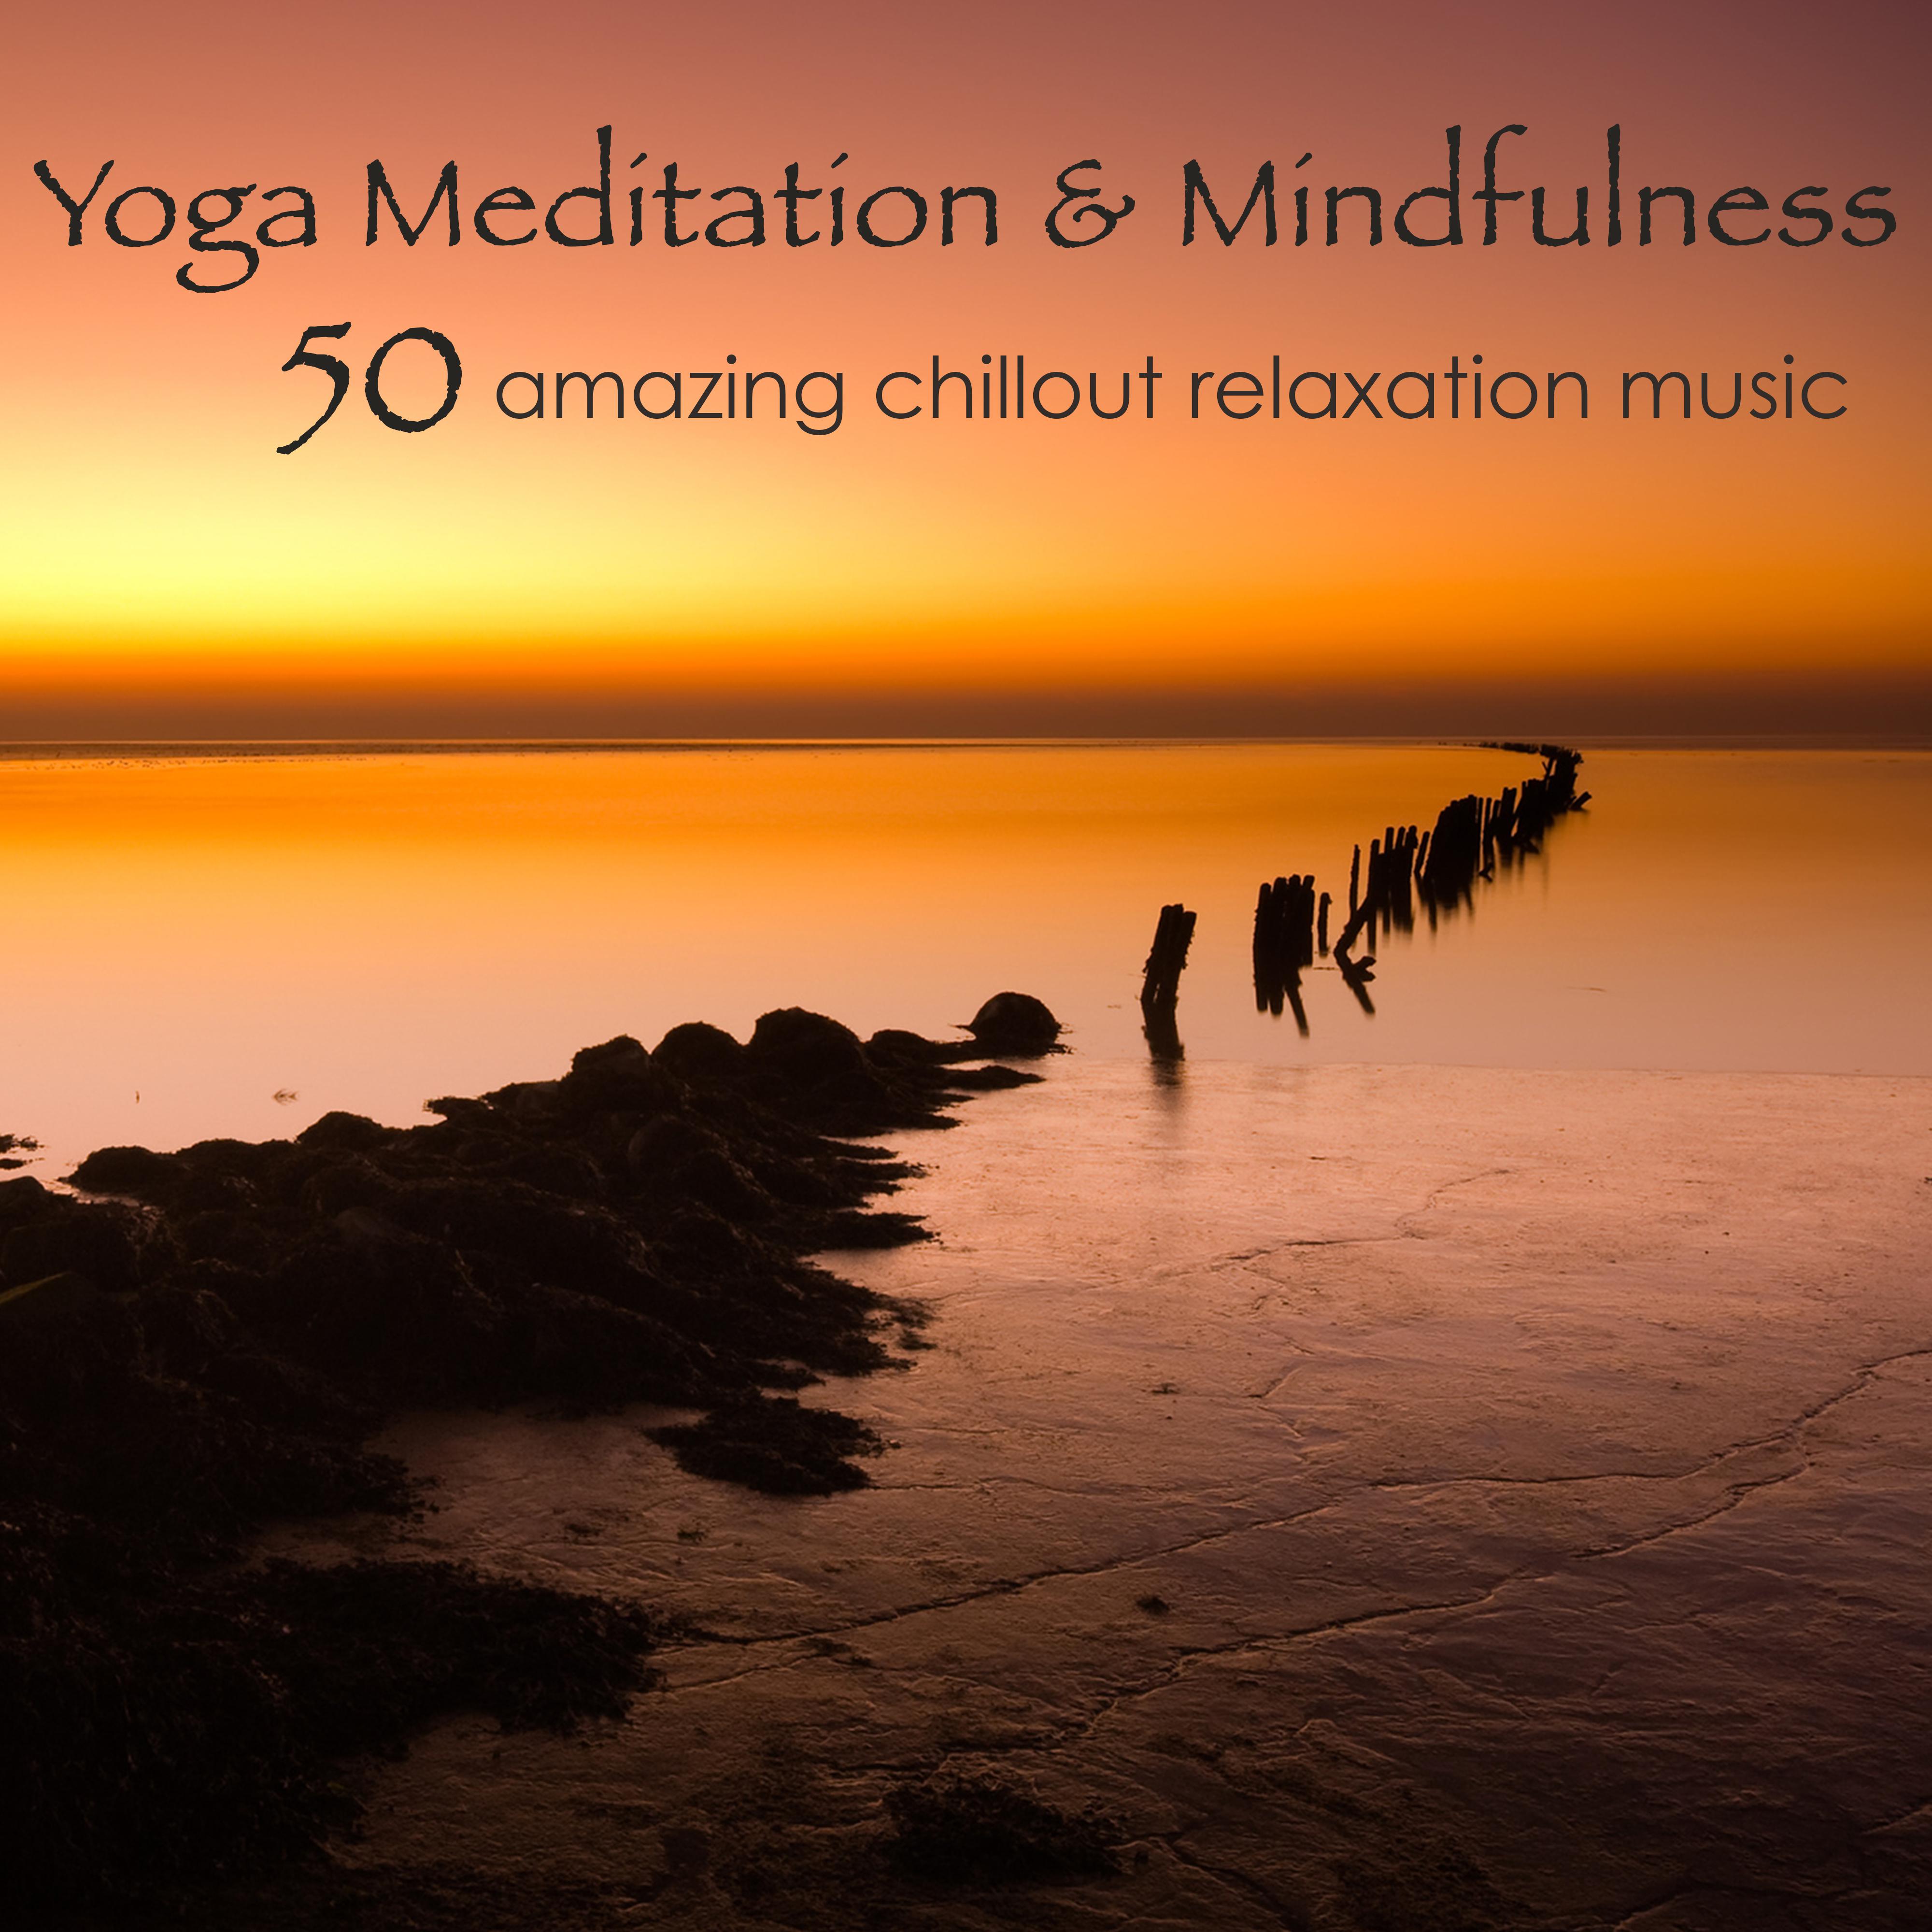 Yoga Meditation  Mindfulness  50 Amazing Chillout Relaxation Music for Yoga Poses, Mindfulness Meditation Exercises, Relax  Sleep